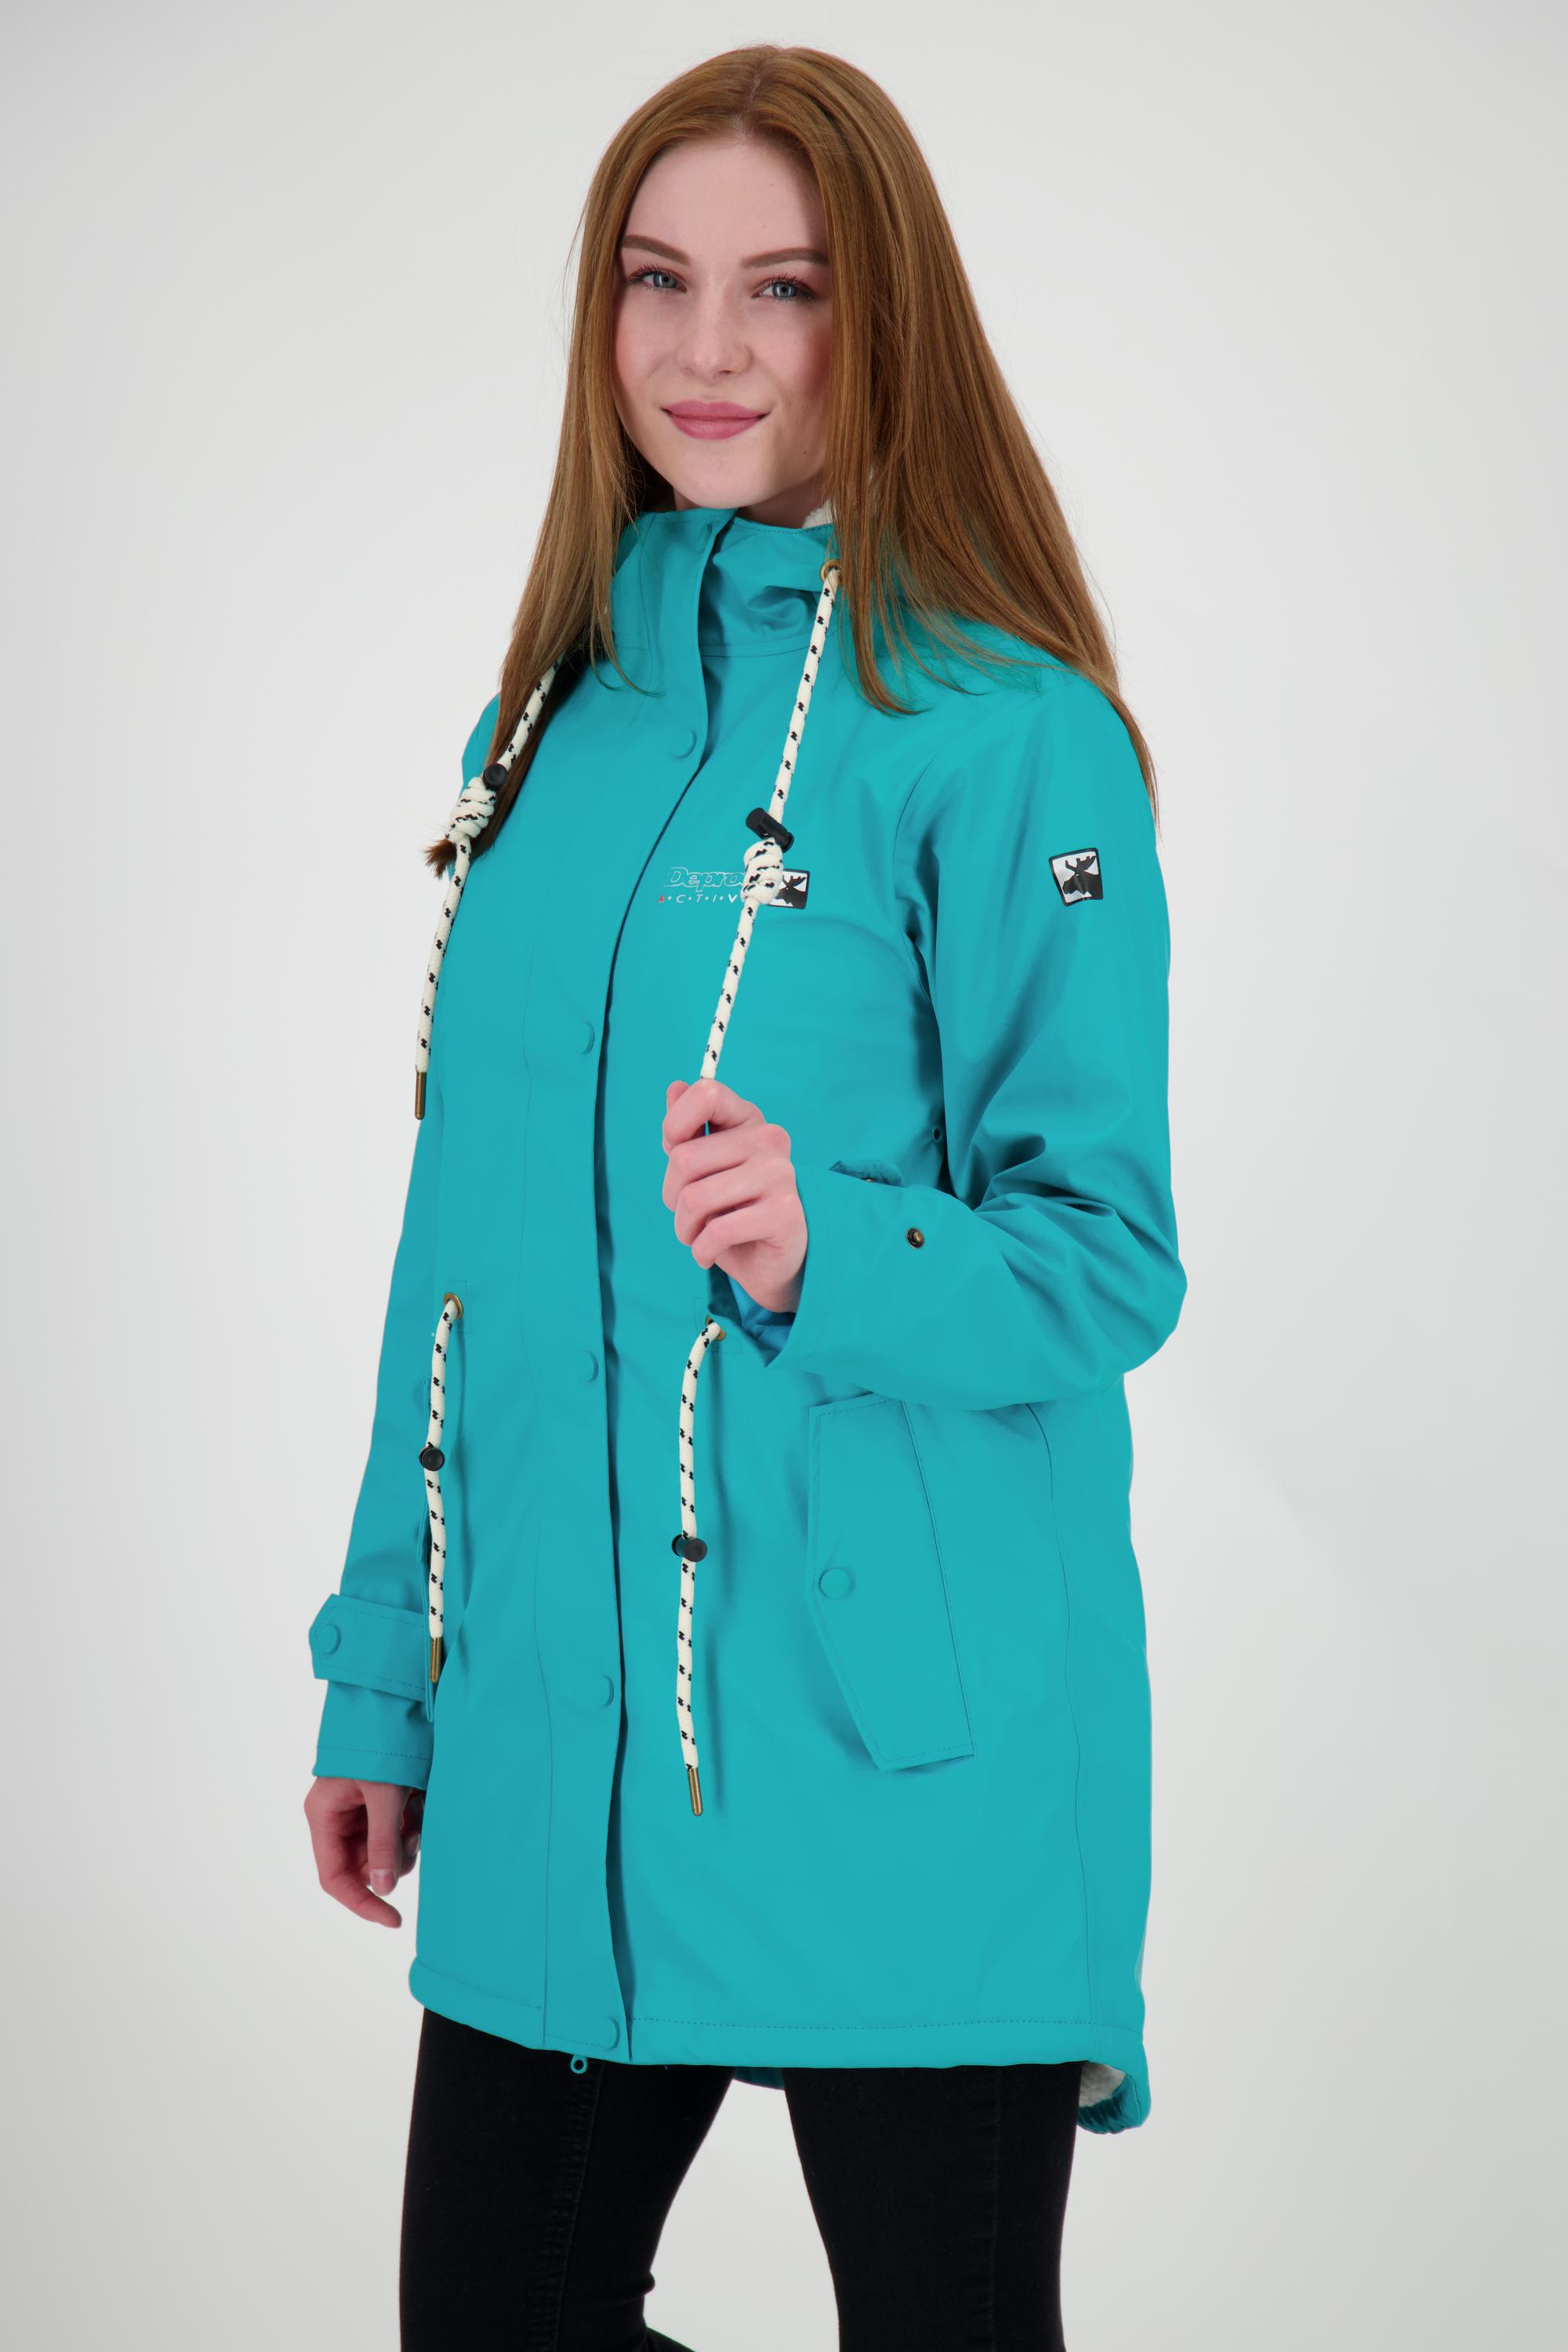 DEPROC active Friesennerz ELLESMERE WOMEN Regenjacke Damen turquoise im  Online Shop von SportScheck kaufen